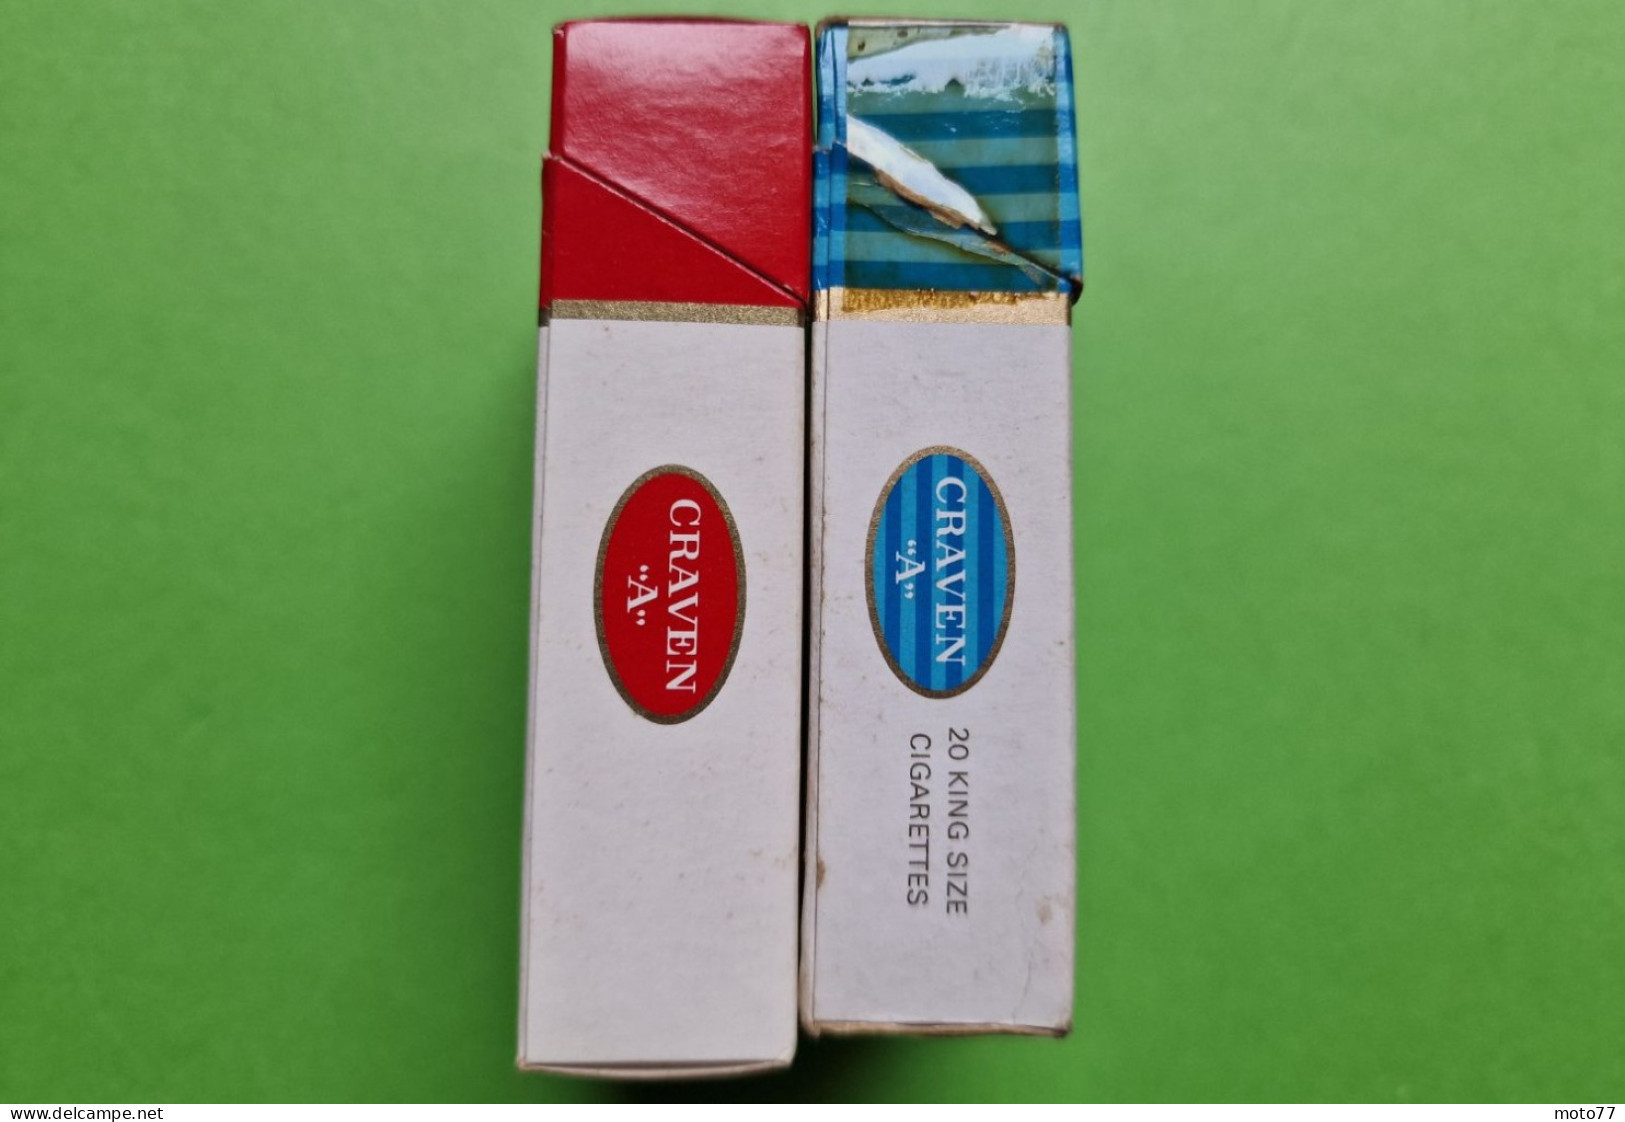 Lot 2 Anciens PAQUETS De CIGARETTES Vide - CRAVEN "A" - Vers 1980 - Etuis à Cigarettes Vides